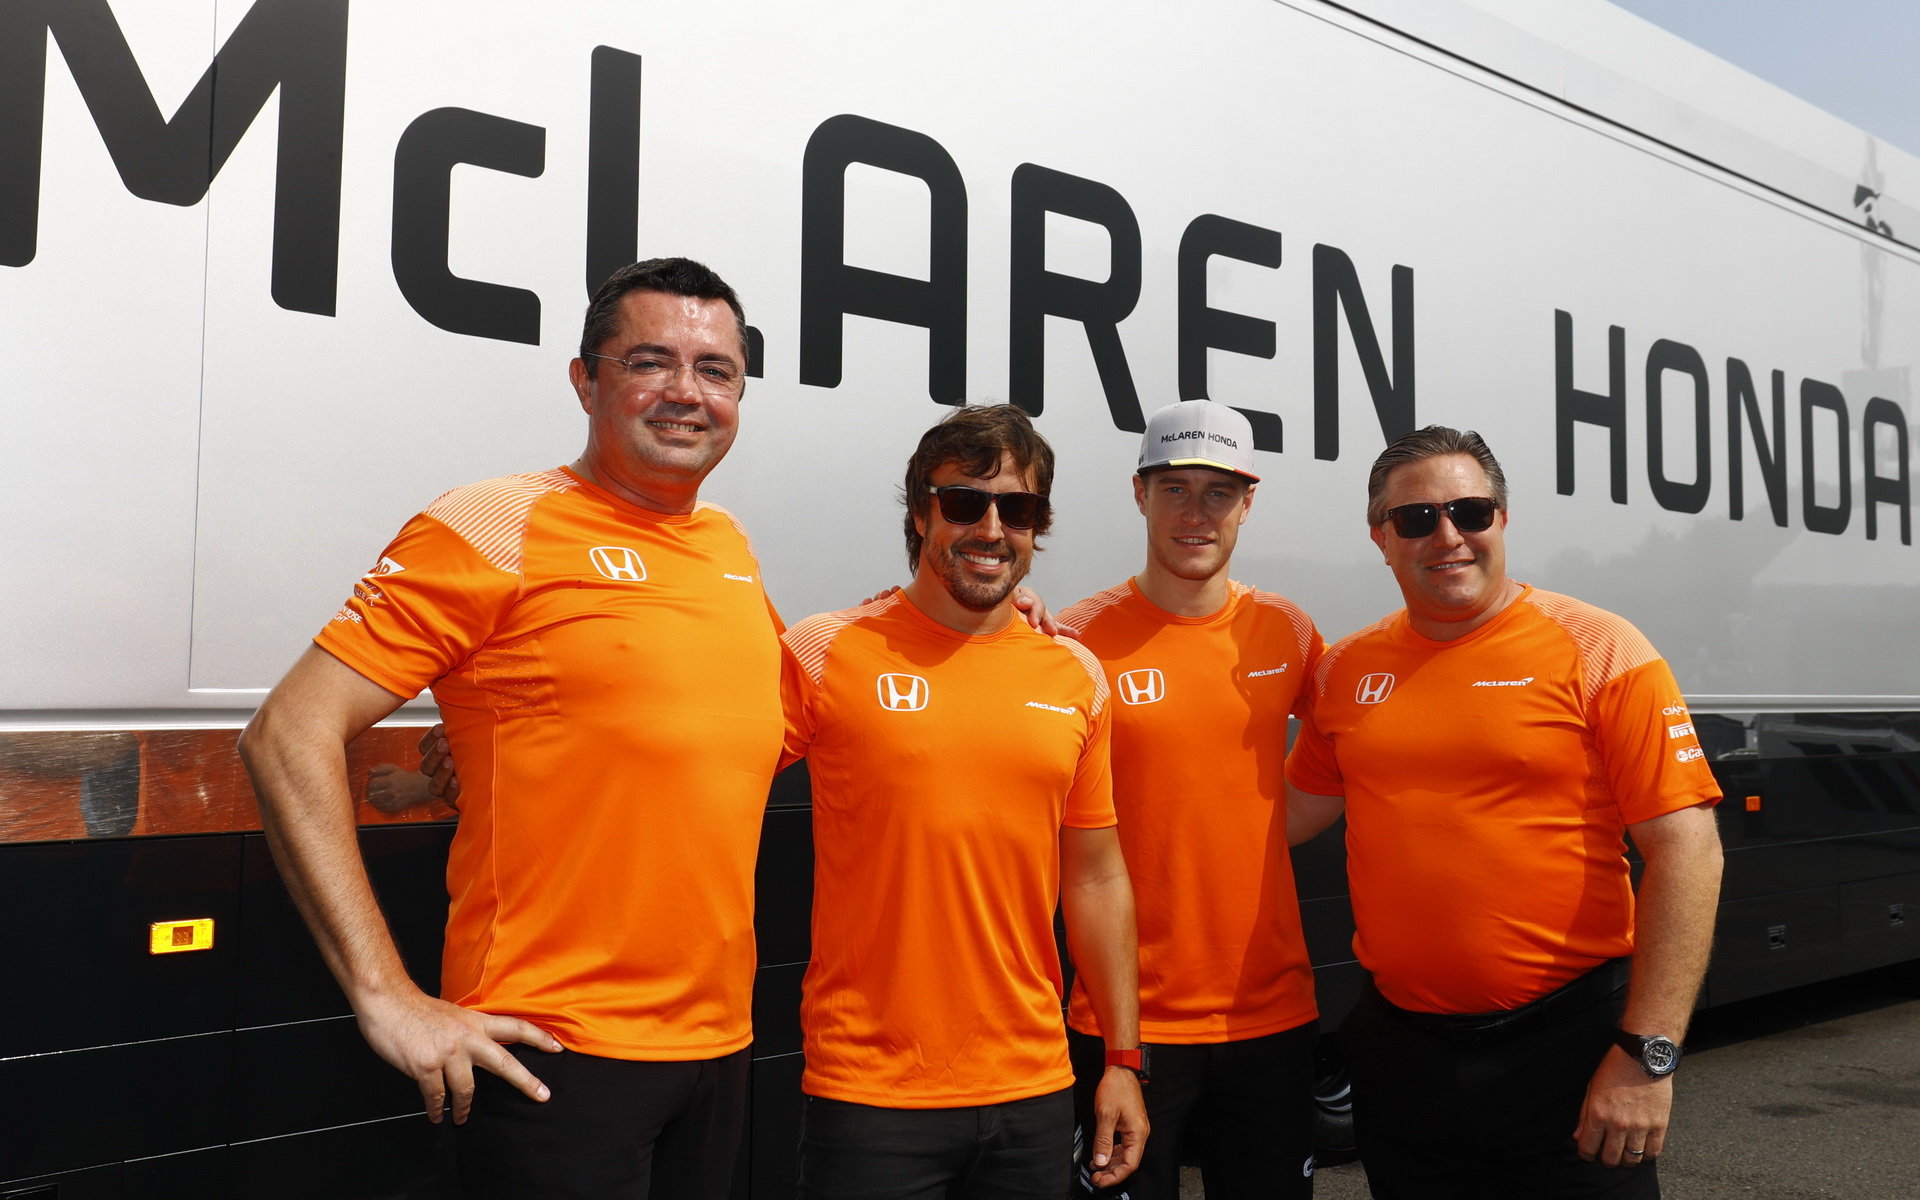 Alonso nevylučuje, že s McLarenem prodlouží smlouvu o několik dalších let